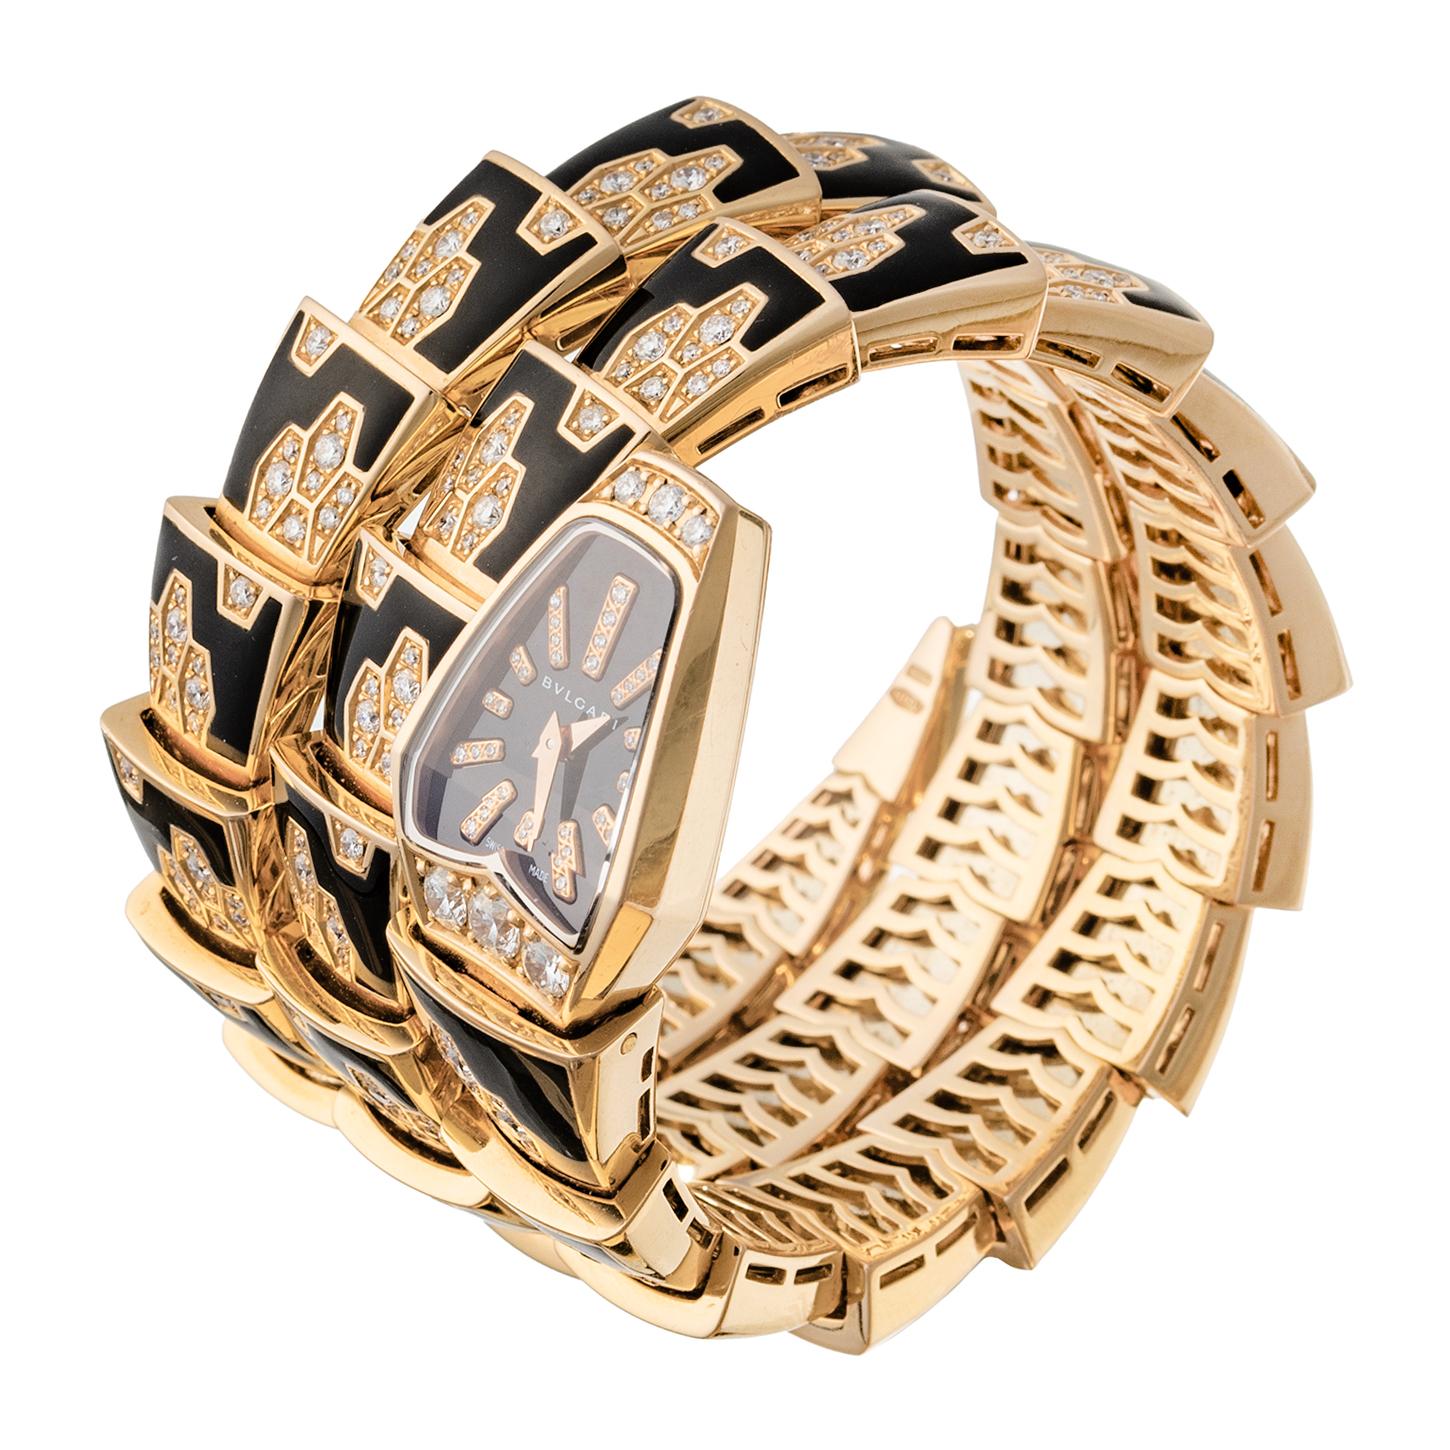 Bvlgari Serpenti Scagile Armbanduhr (ref. SPP26BGD1GBLD1.2T), mit einem Schweizer Quarzwerk, einem schwarzen Zifferblatt mit diamantbesetzten Indizes und einem 26 mm großen Gehäuse aus 18 Karat Roségold, flankiert von Brillanten, mit einem